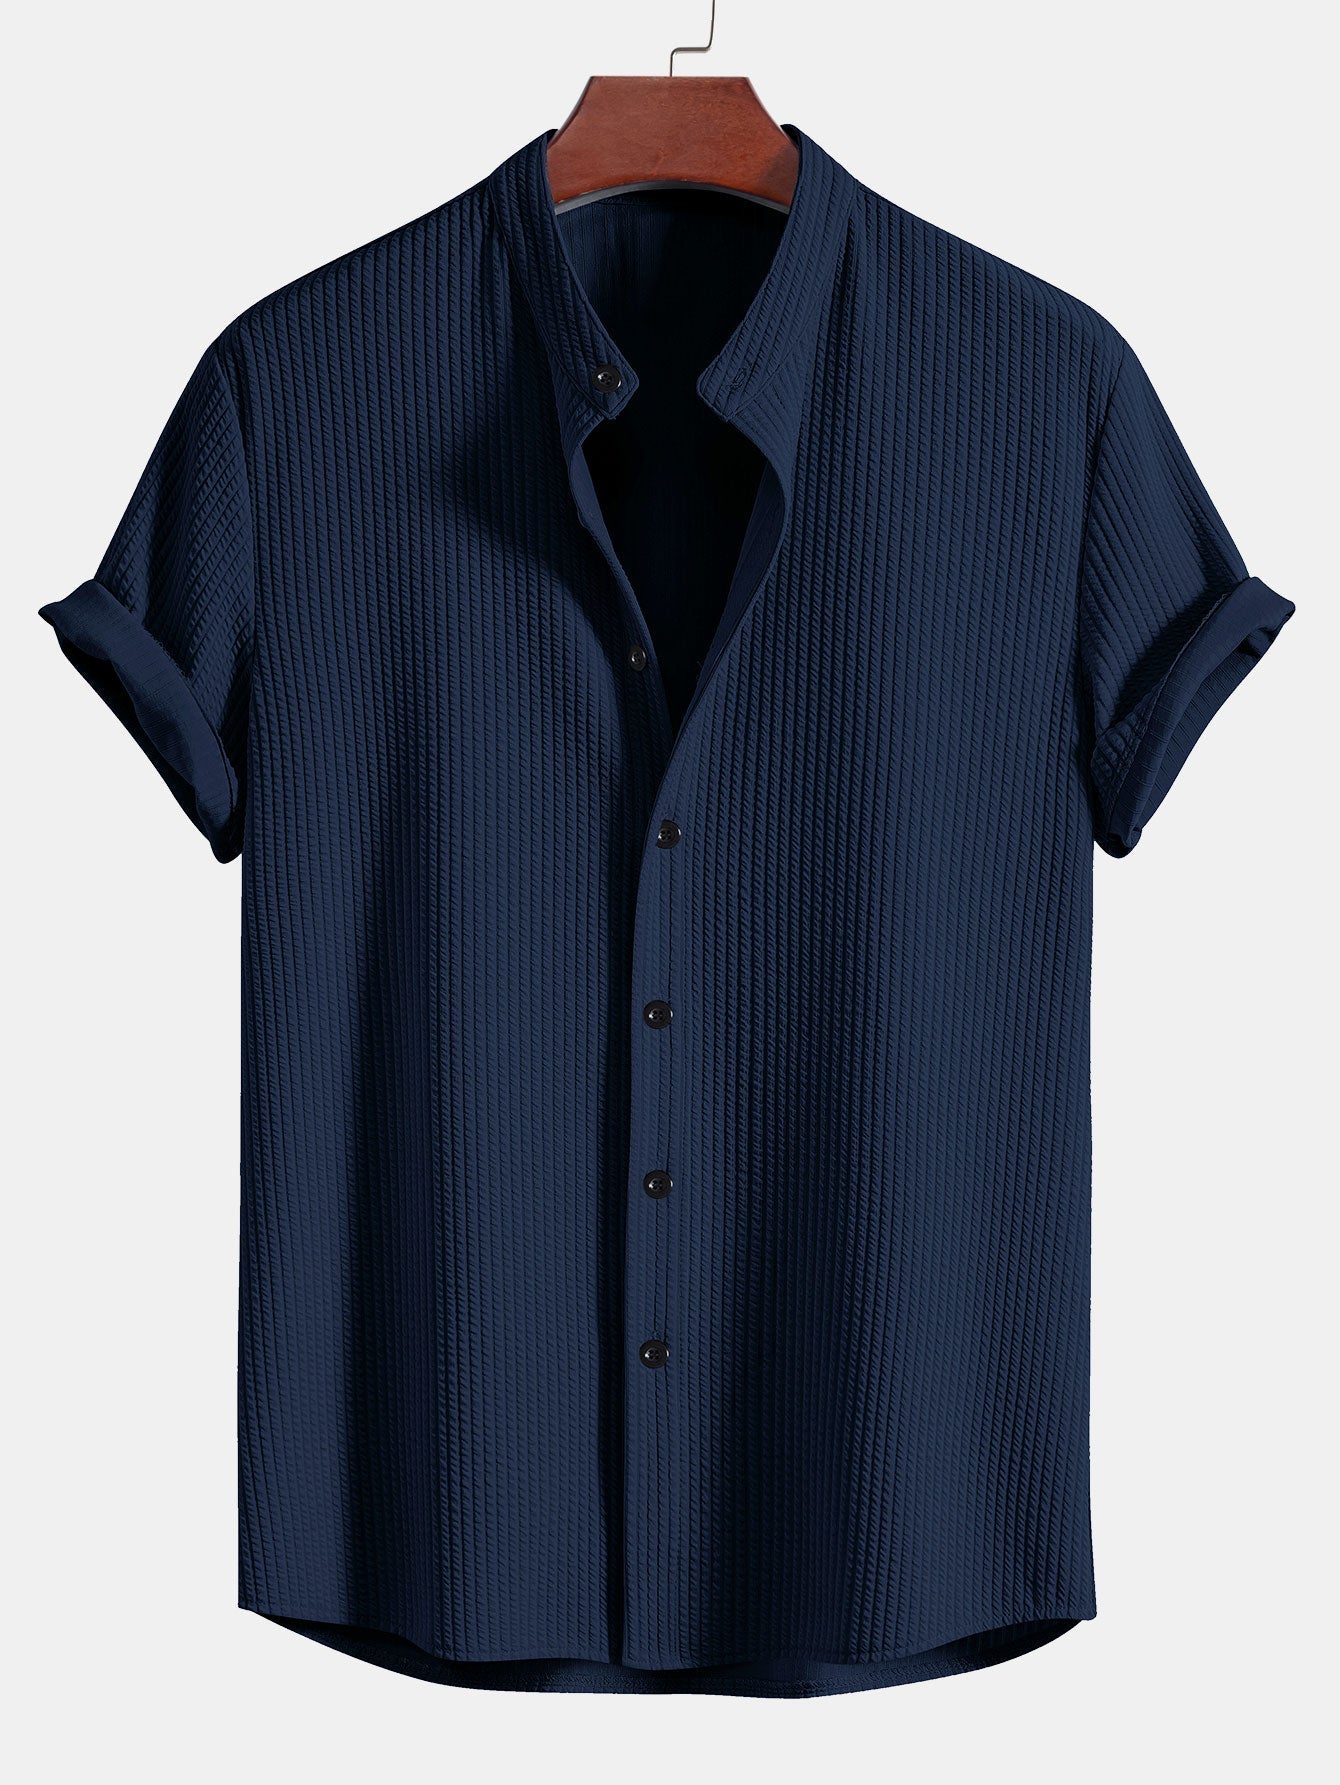 Aurelian™ - Stand-up Collar Shirt